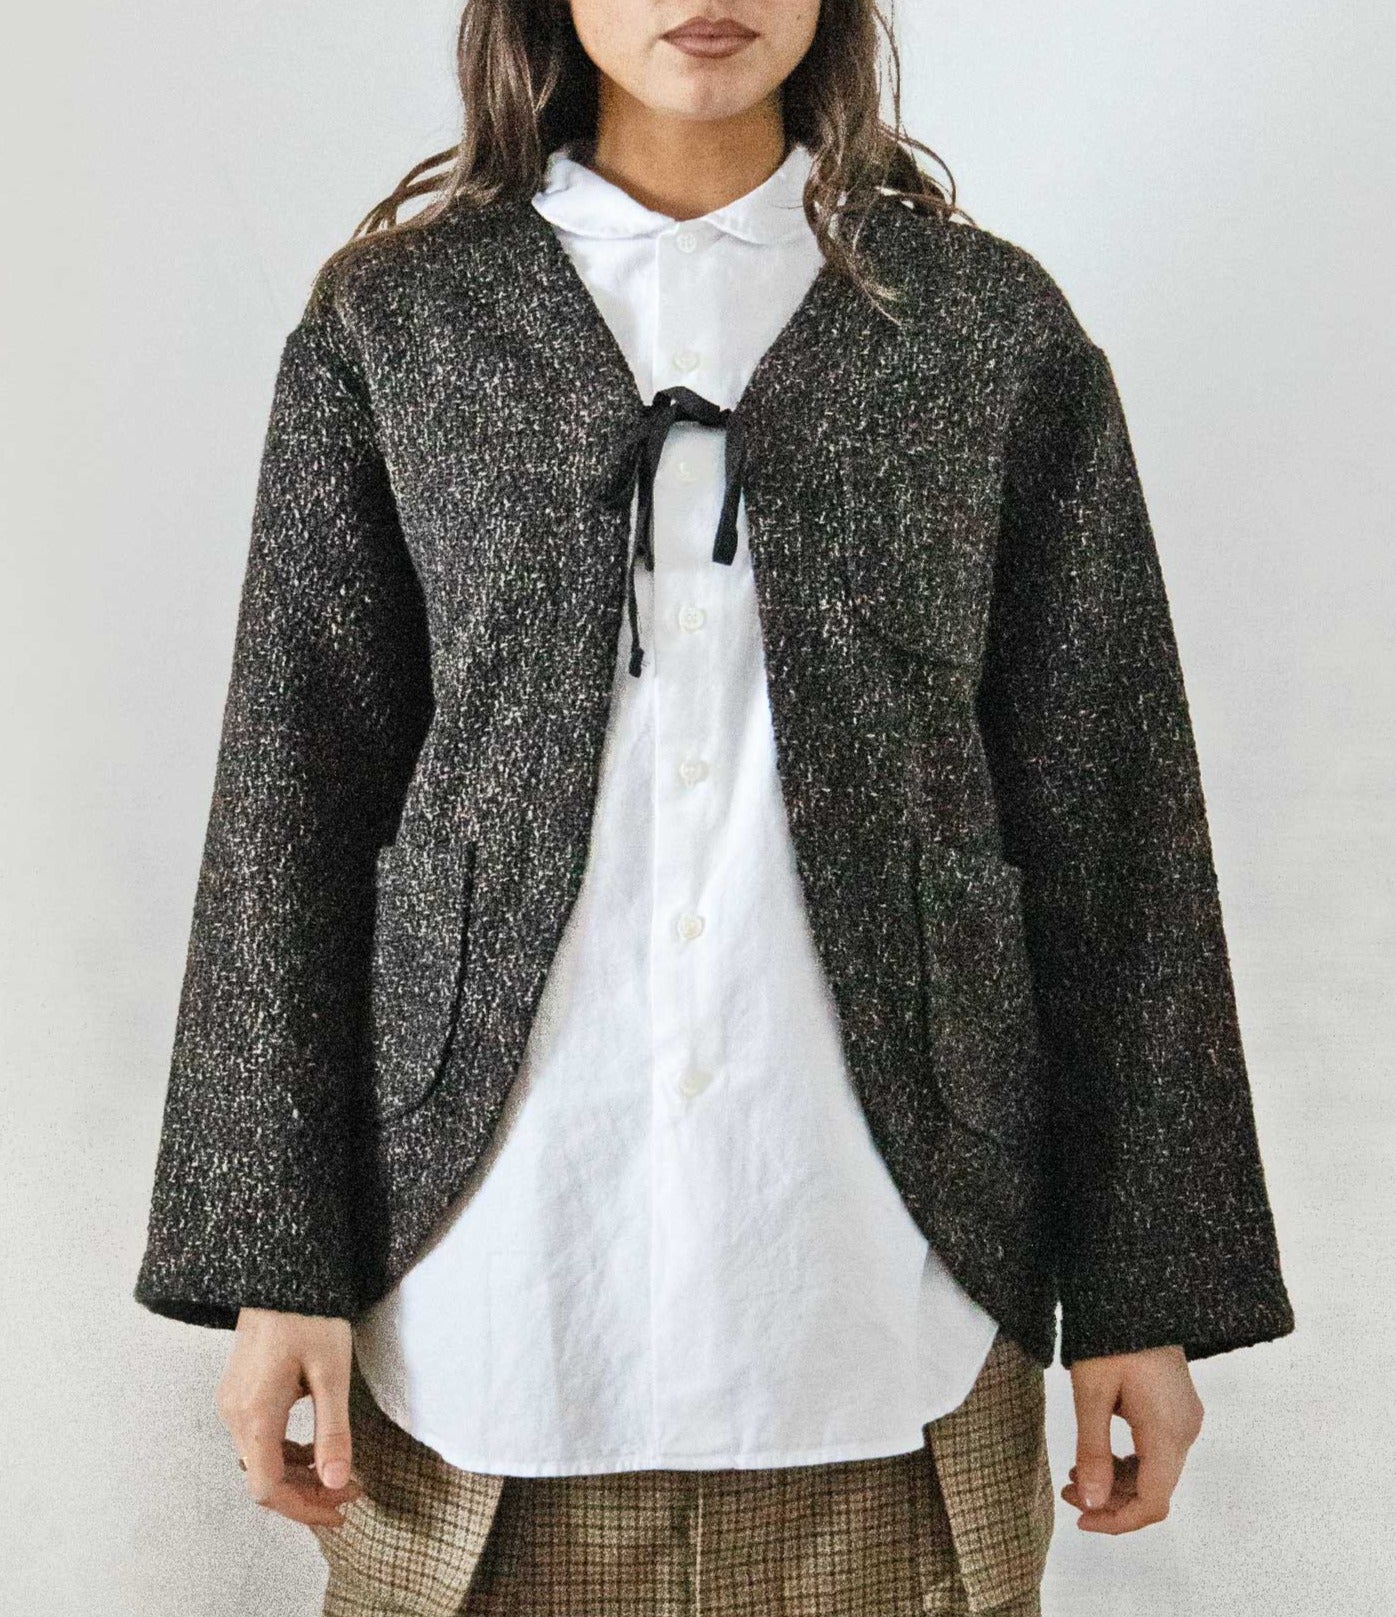 Engineered Garments Cutaway Jacket - Dk Brown Polyester Wool Tweed Boucle